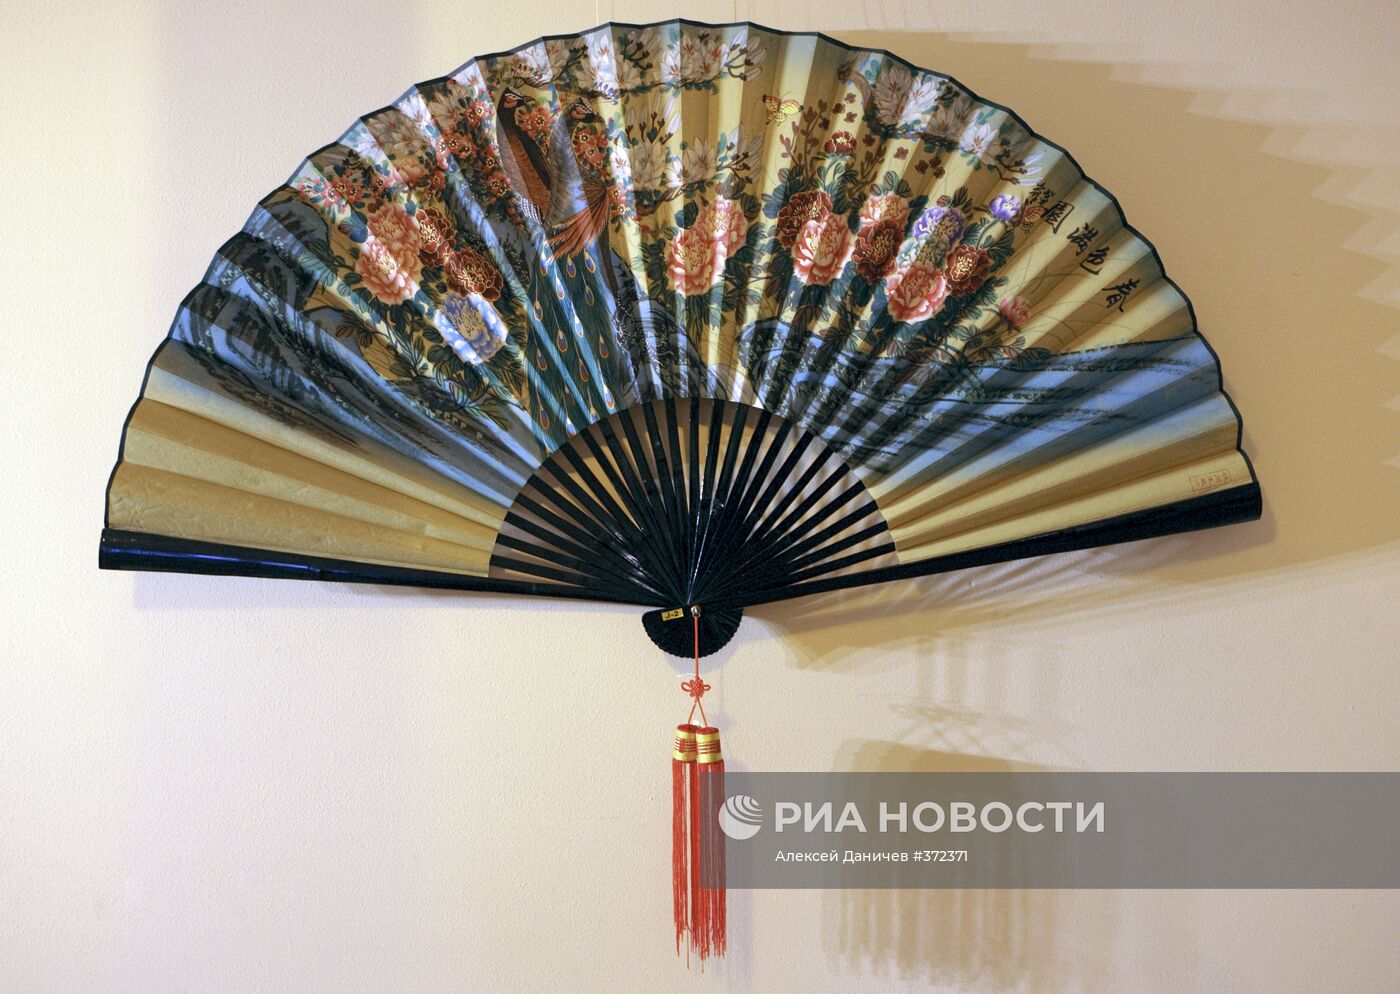 Выставка "Китайские веера и зонтики Ханчжоу" в Санкт-Петербурге